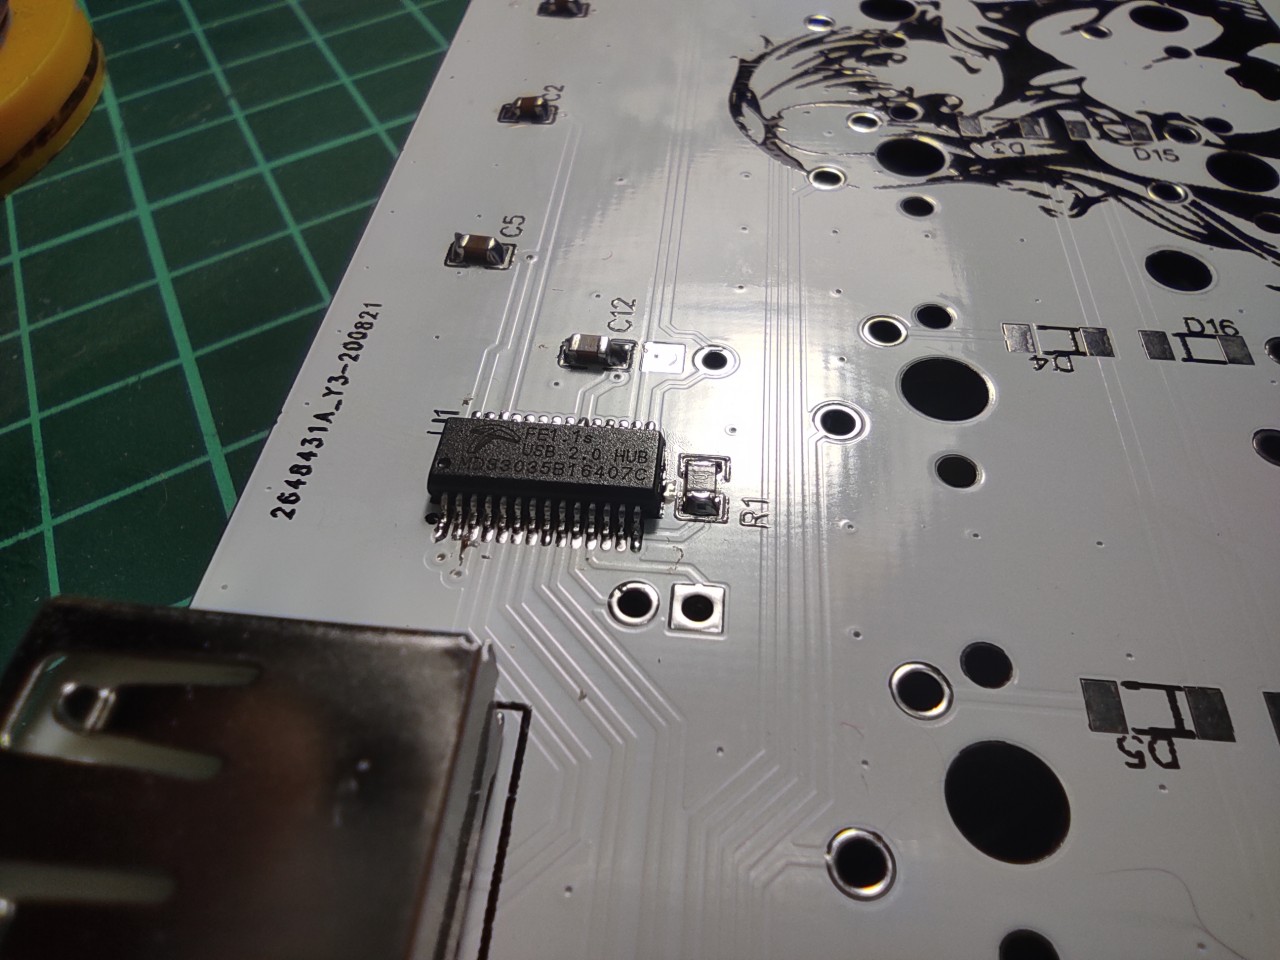 Keyboard PCB - mounting screws